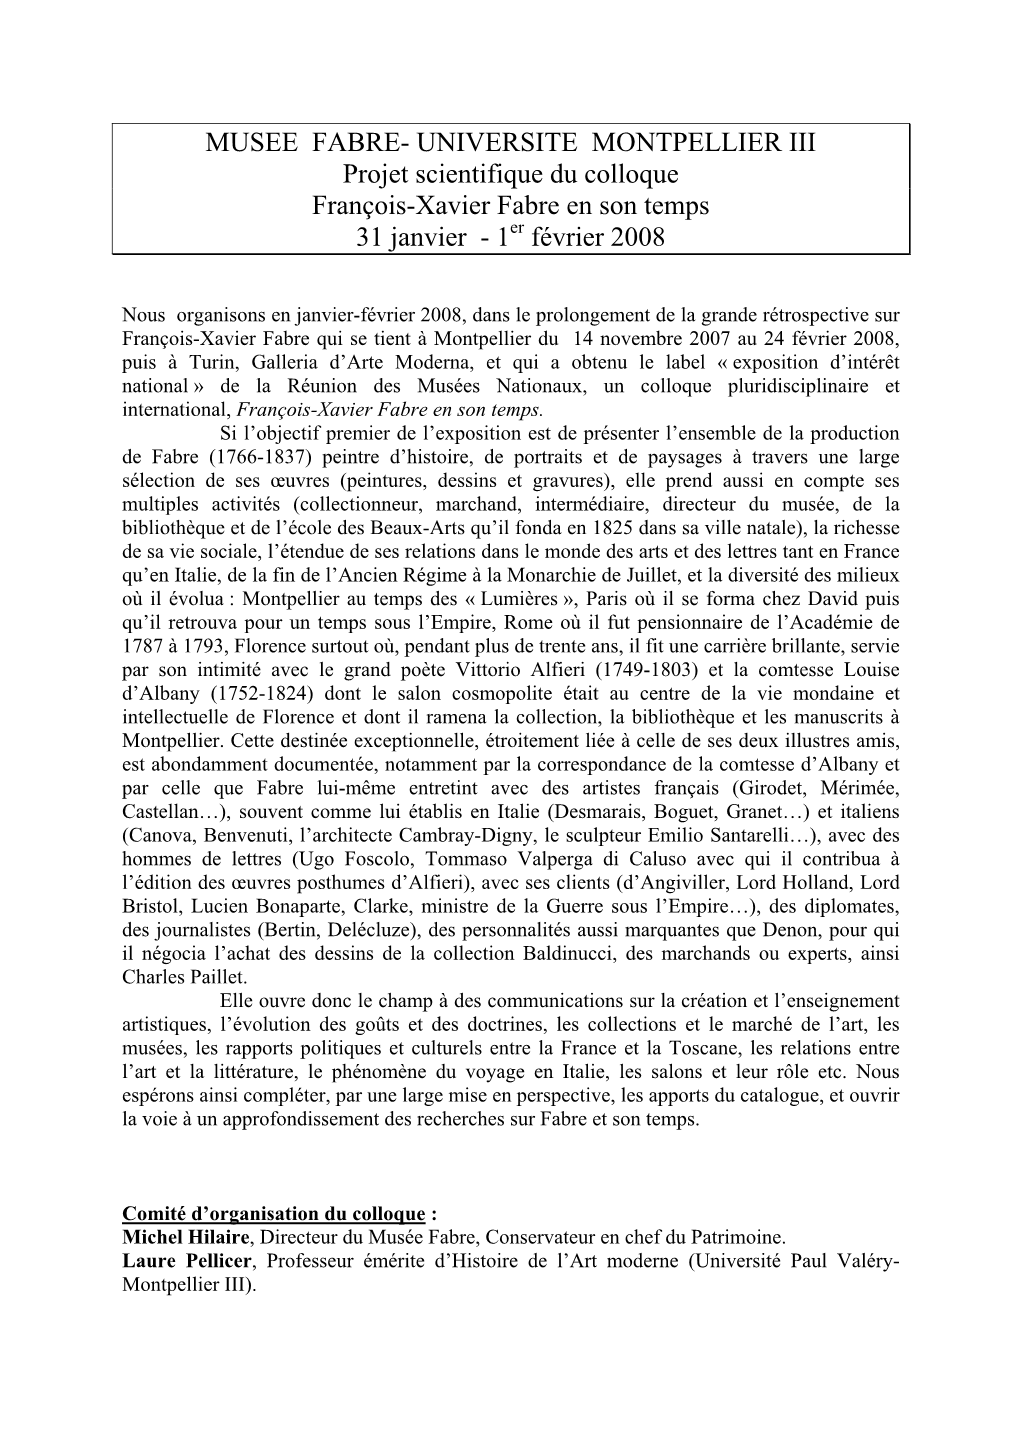 MUSEE FABRE- UNIVERSITE MONTPELLIER III Projet Scientifique Du Colloque François-Xavier Fabre En Son Temps 31 Janvier - 1Er Février 2008